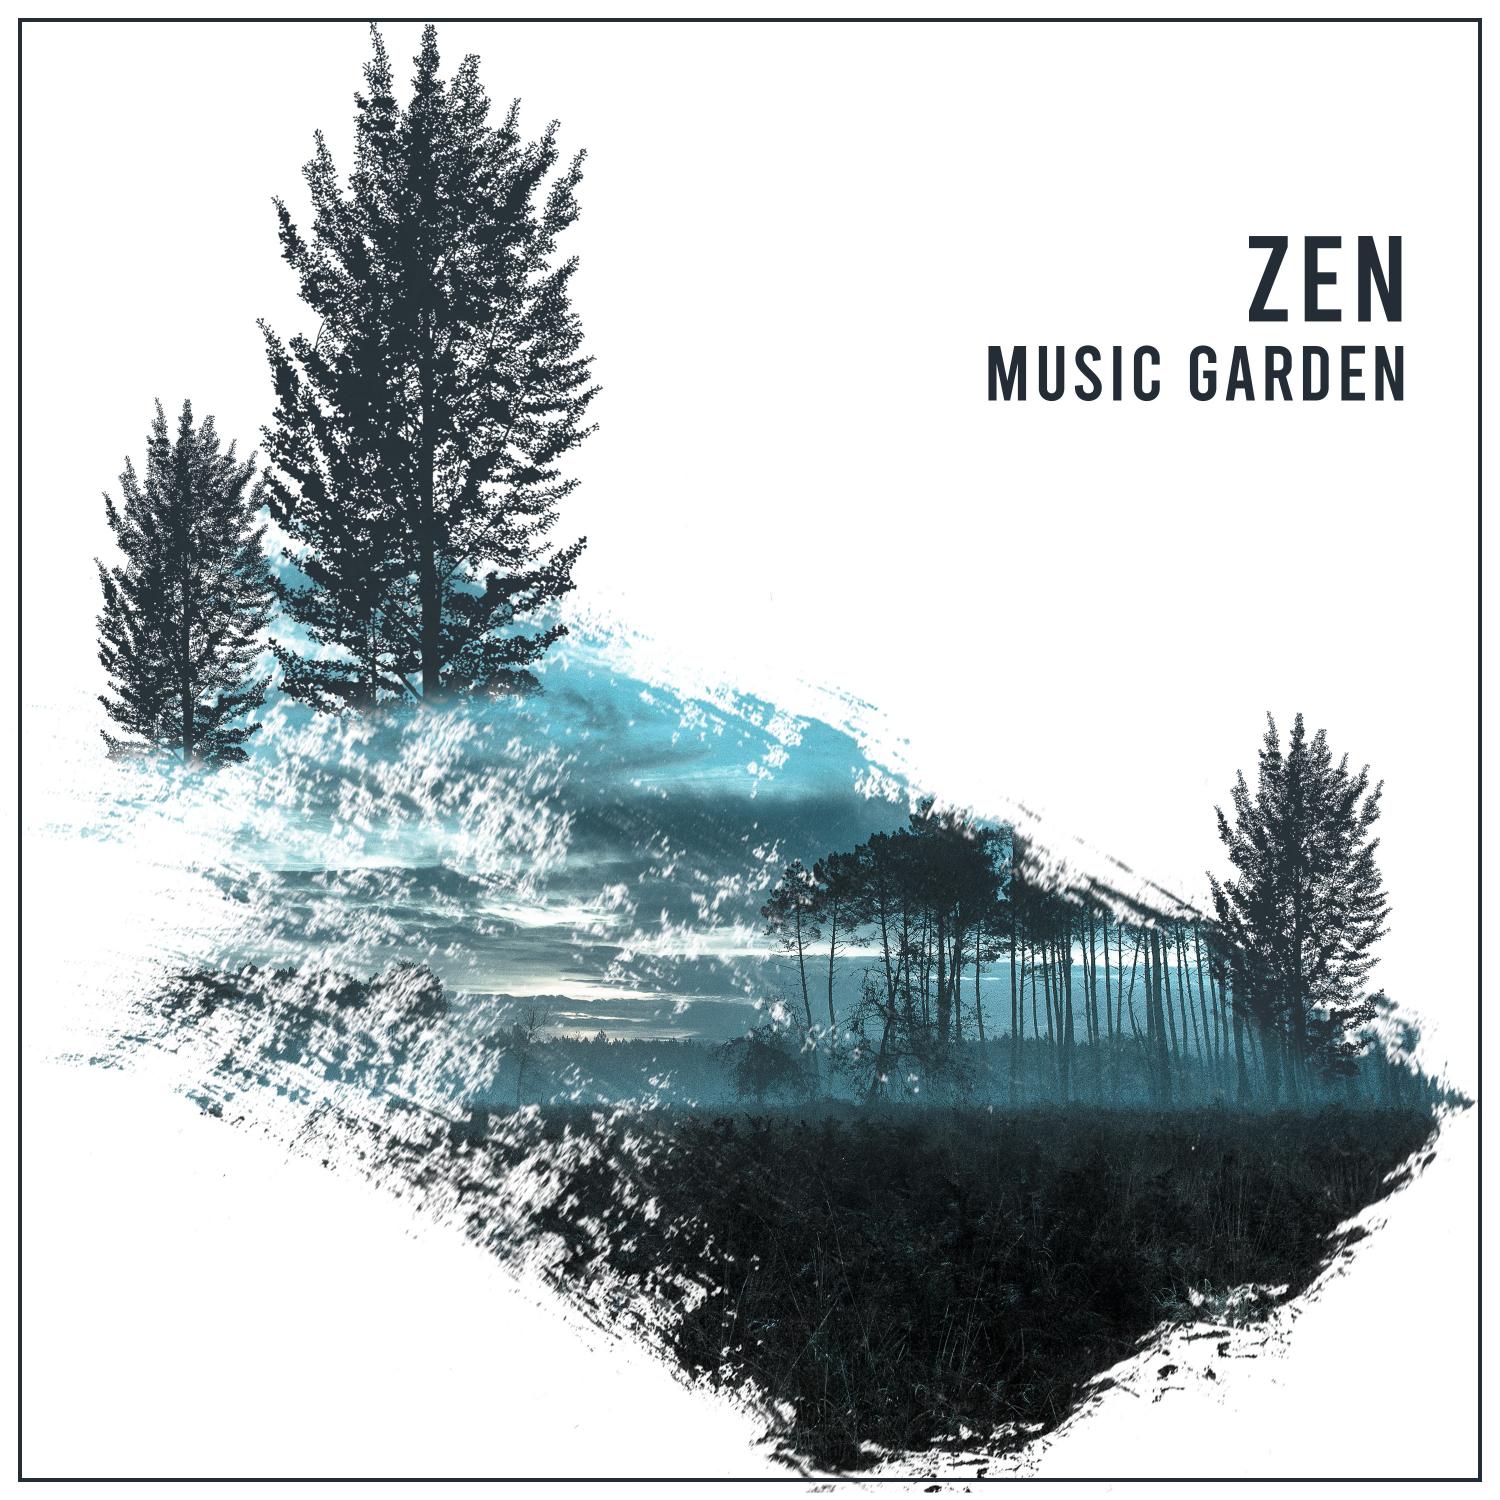 12 Tracks from the Zen Music Garden